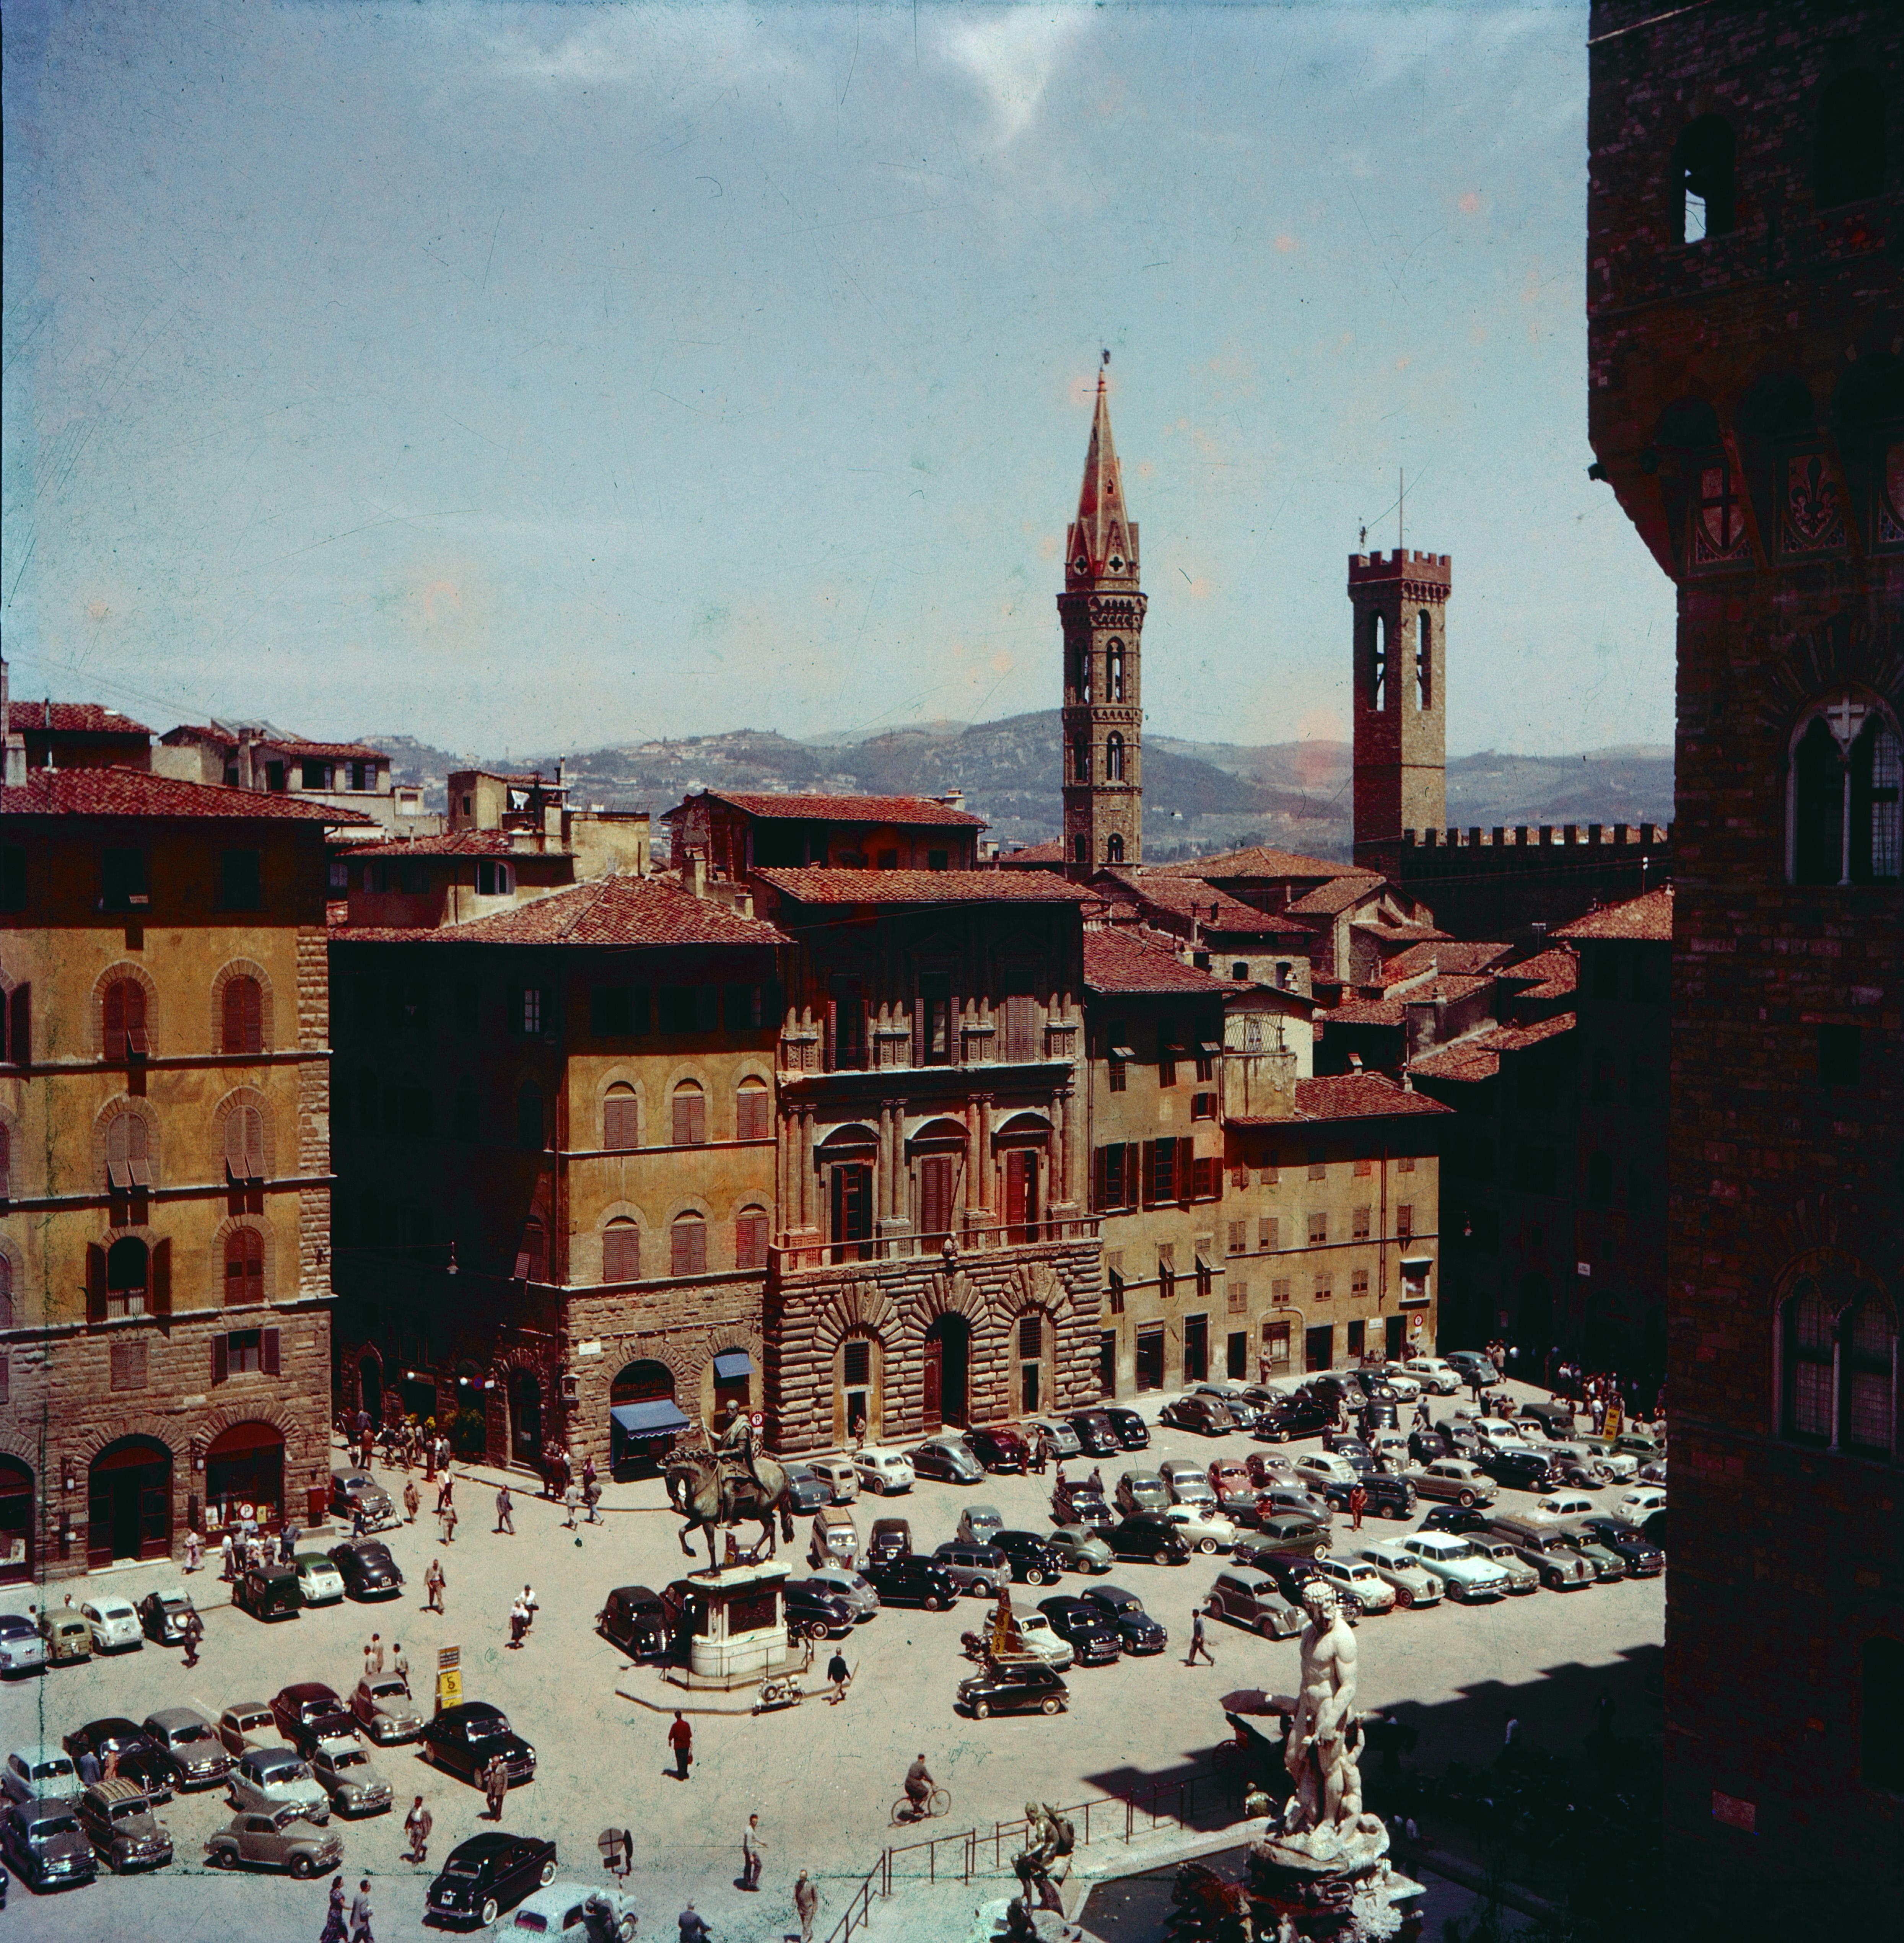 Unknown Color Photograph - Italy in  1956 - Piazza della Signoria, Florence